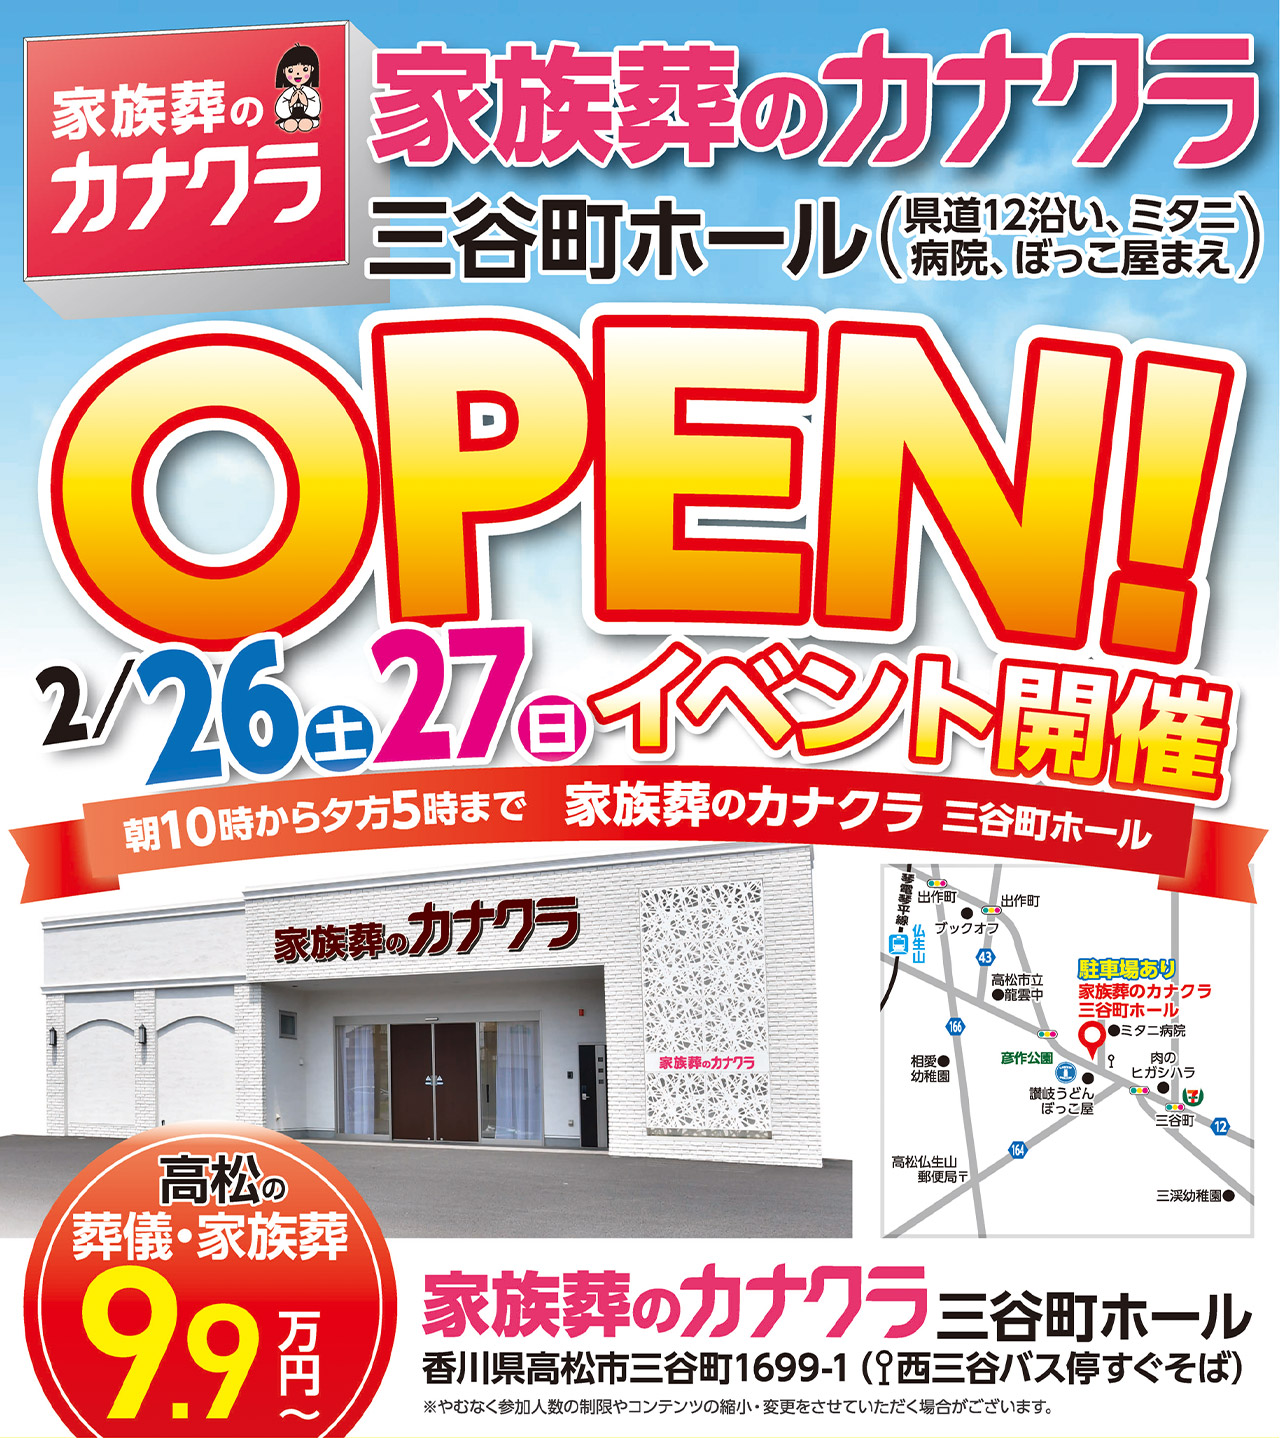 高松三谷町ホールオープンイベント開催!のイメージ画像